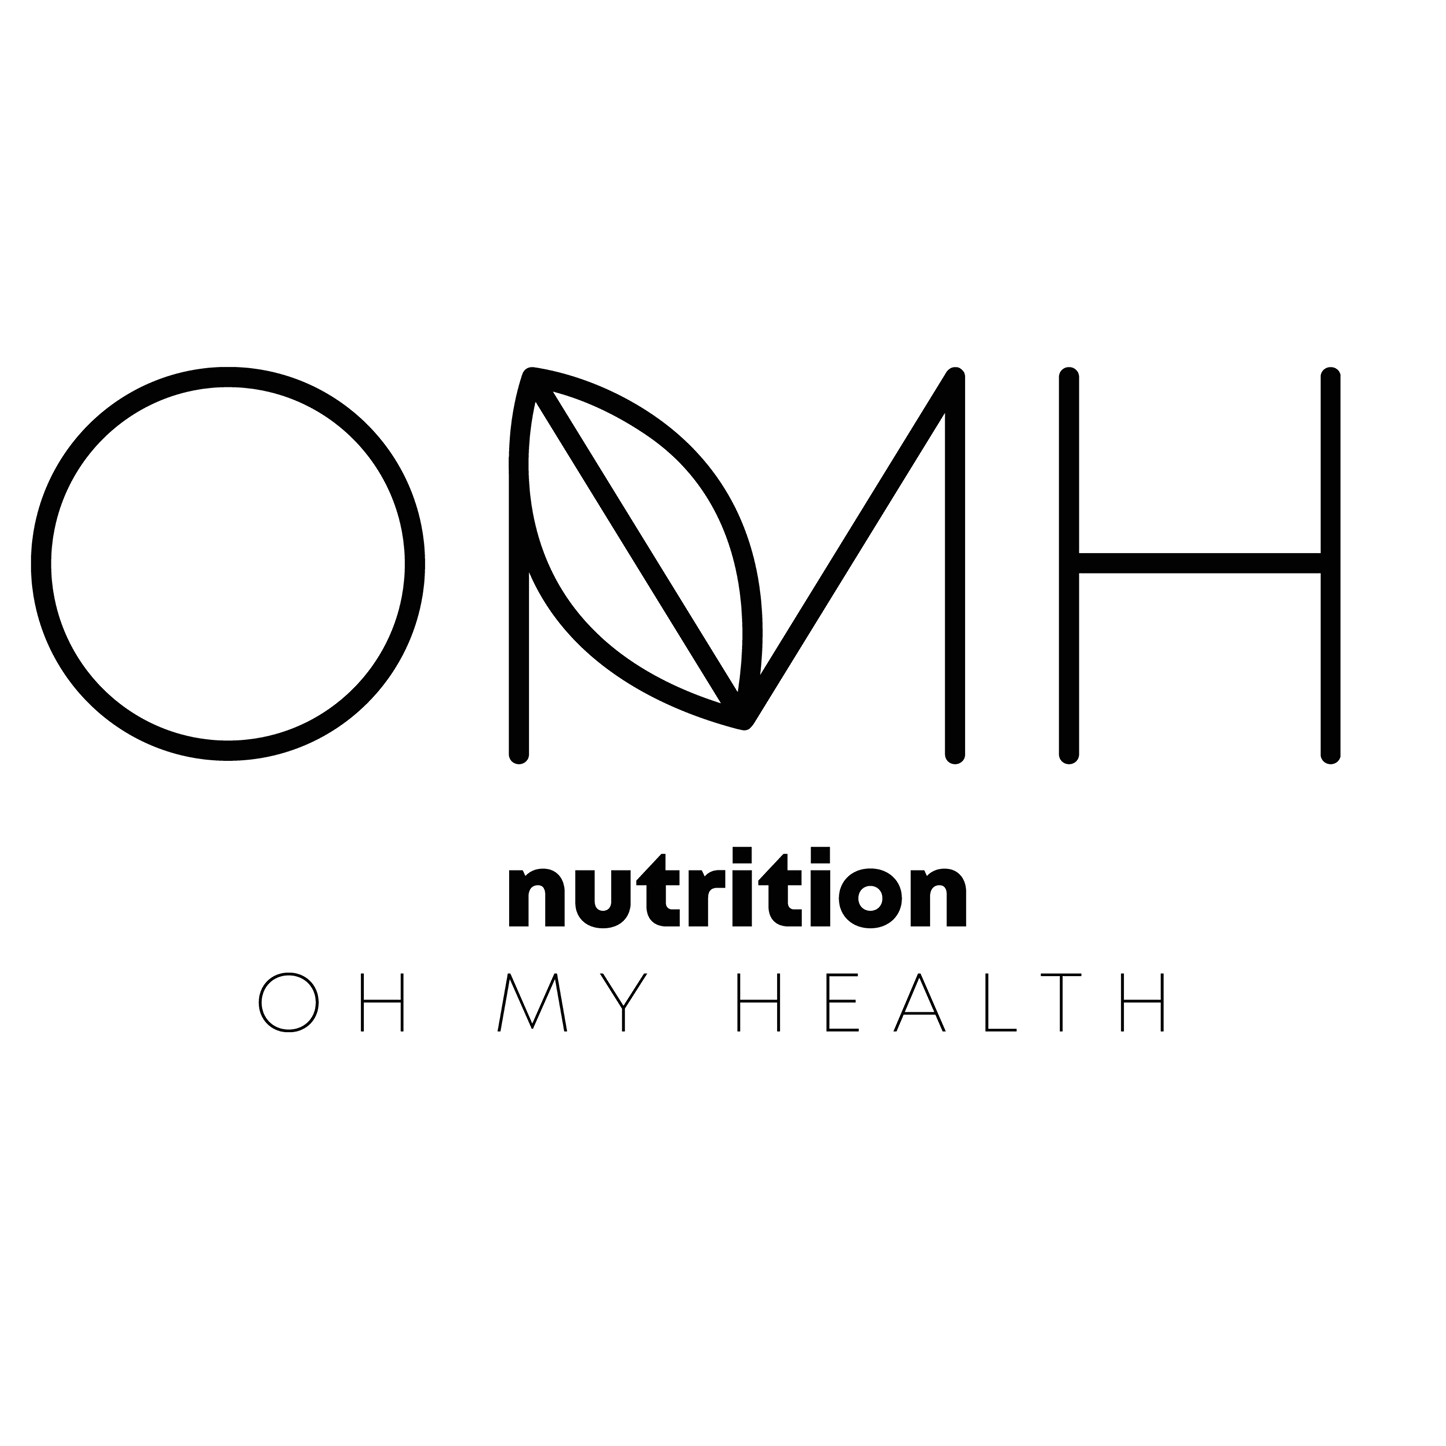 OMH nutrition